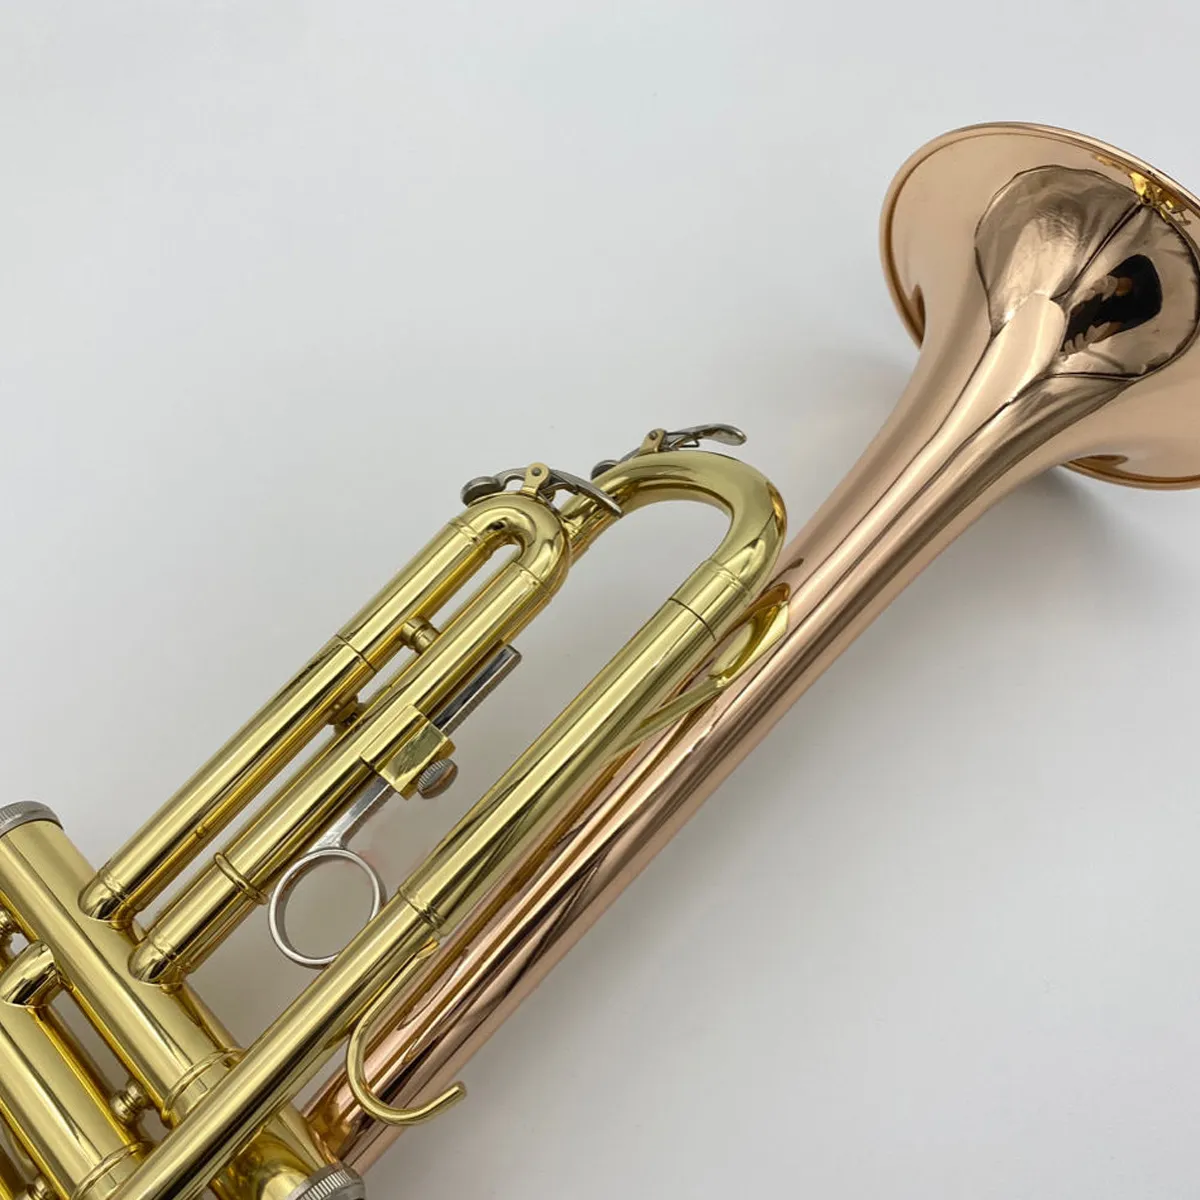 初心者向けの高品質のプロフェッショナルトランペット楽器をプレイするためのゴールドプレートリンブロンズリバースグリップレフタントランペット3966259